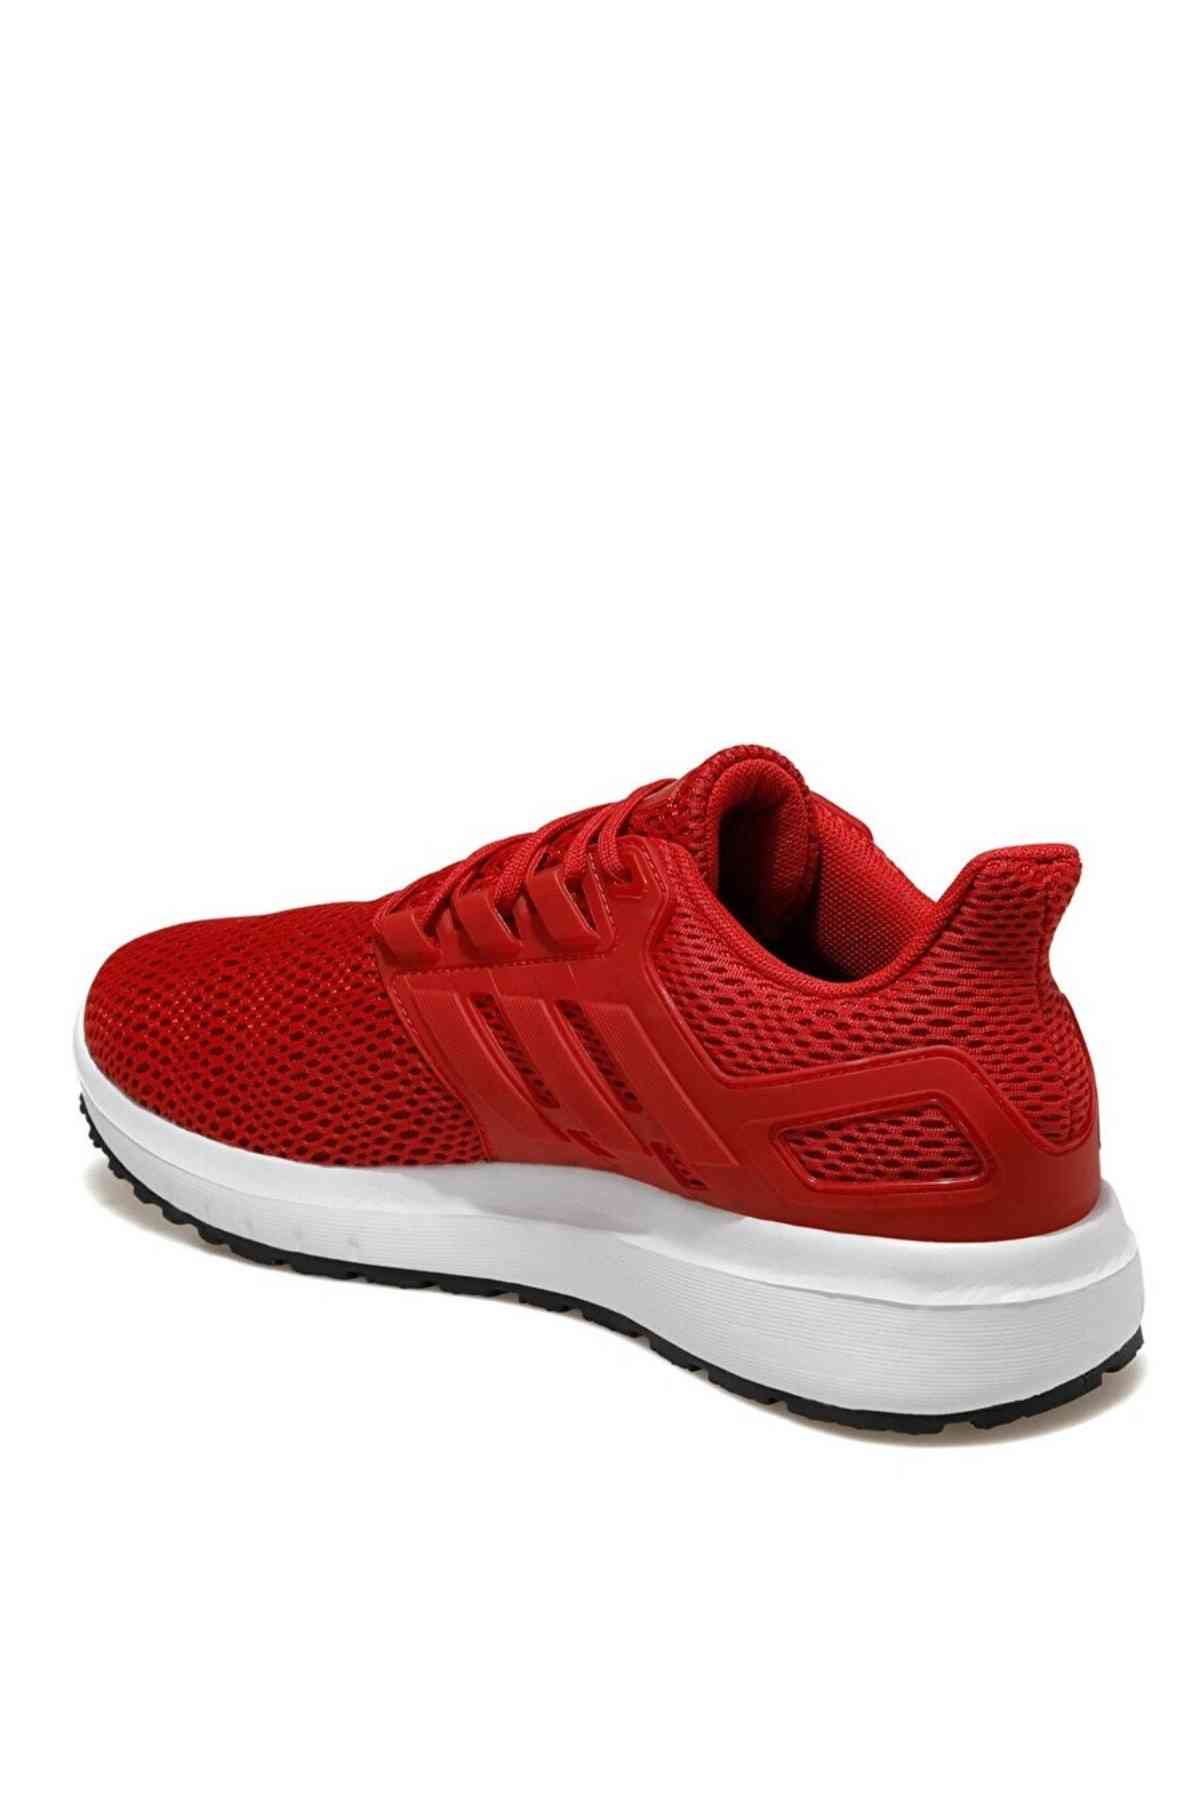 Adidas Fx3634 Ultimashow Erkek Koşu Ayakkabısı